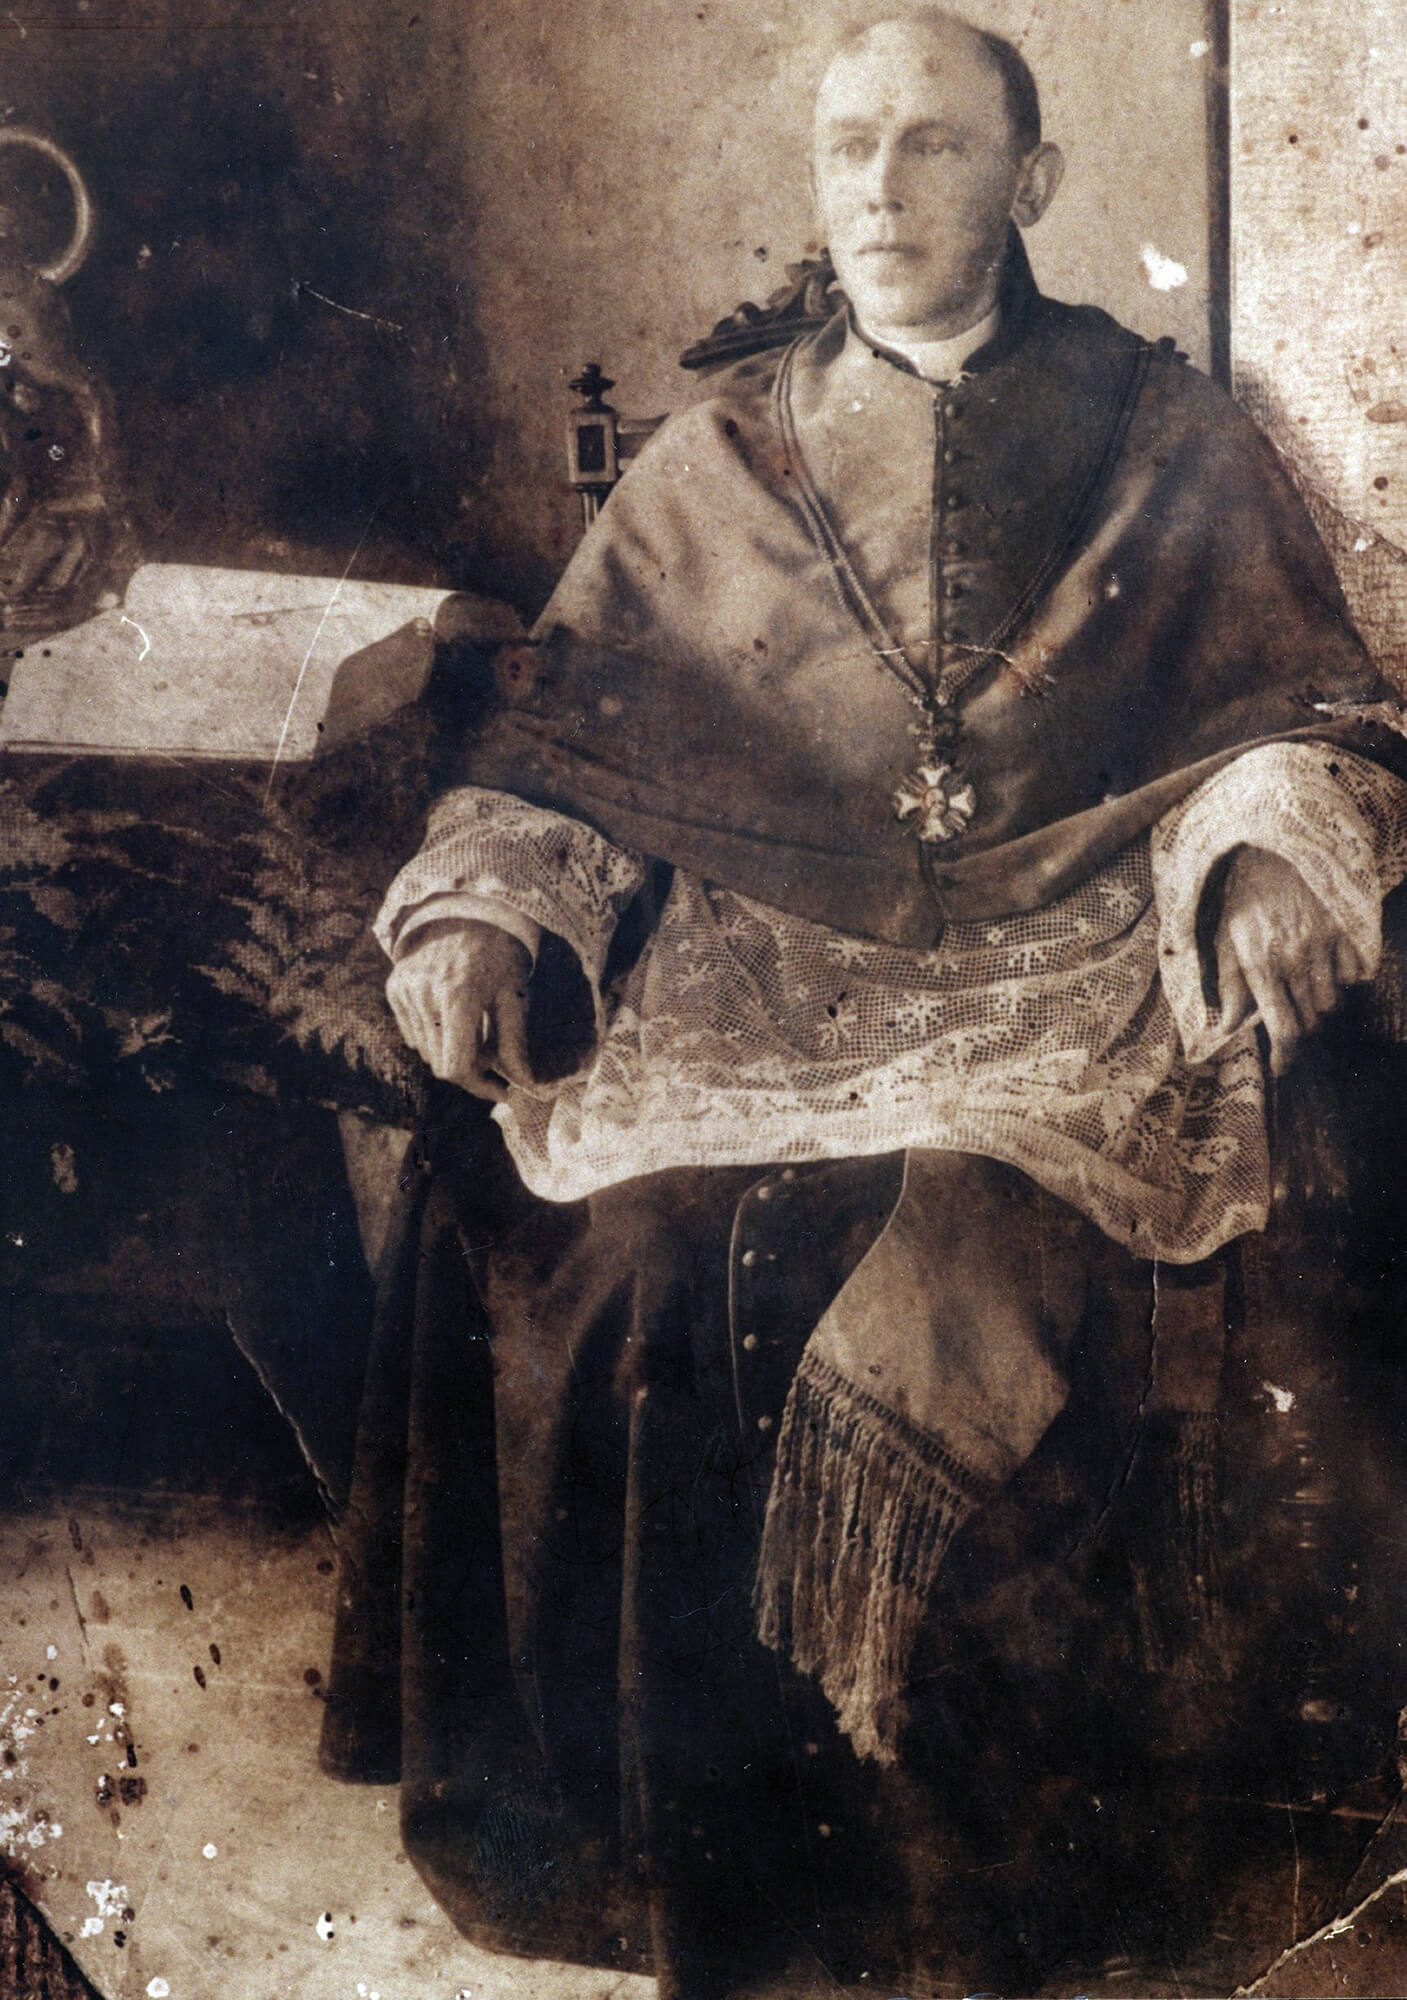 Ks. Marceli Ciemniewski, fotografia, XIX/XX w.